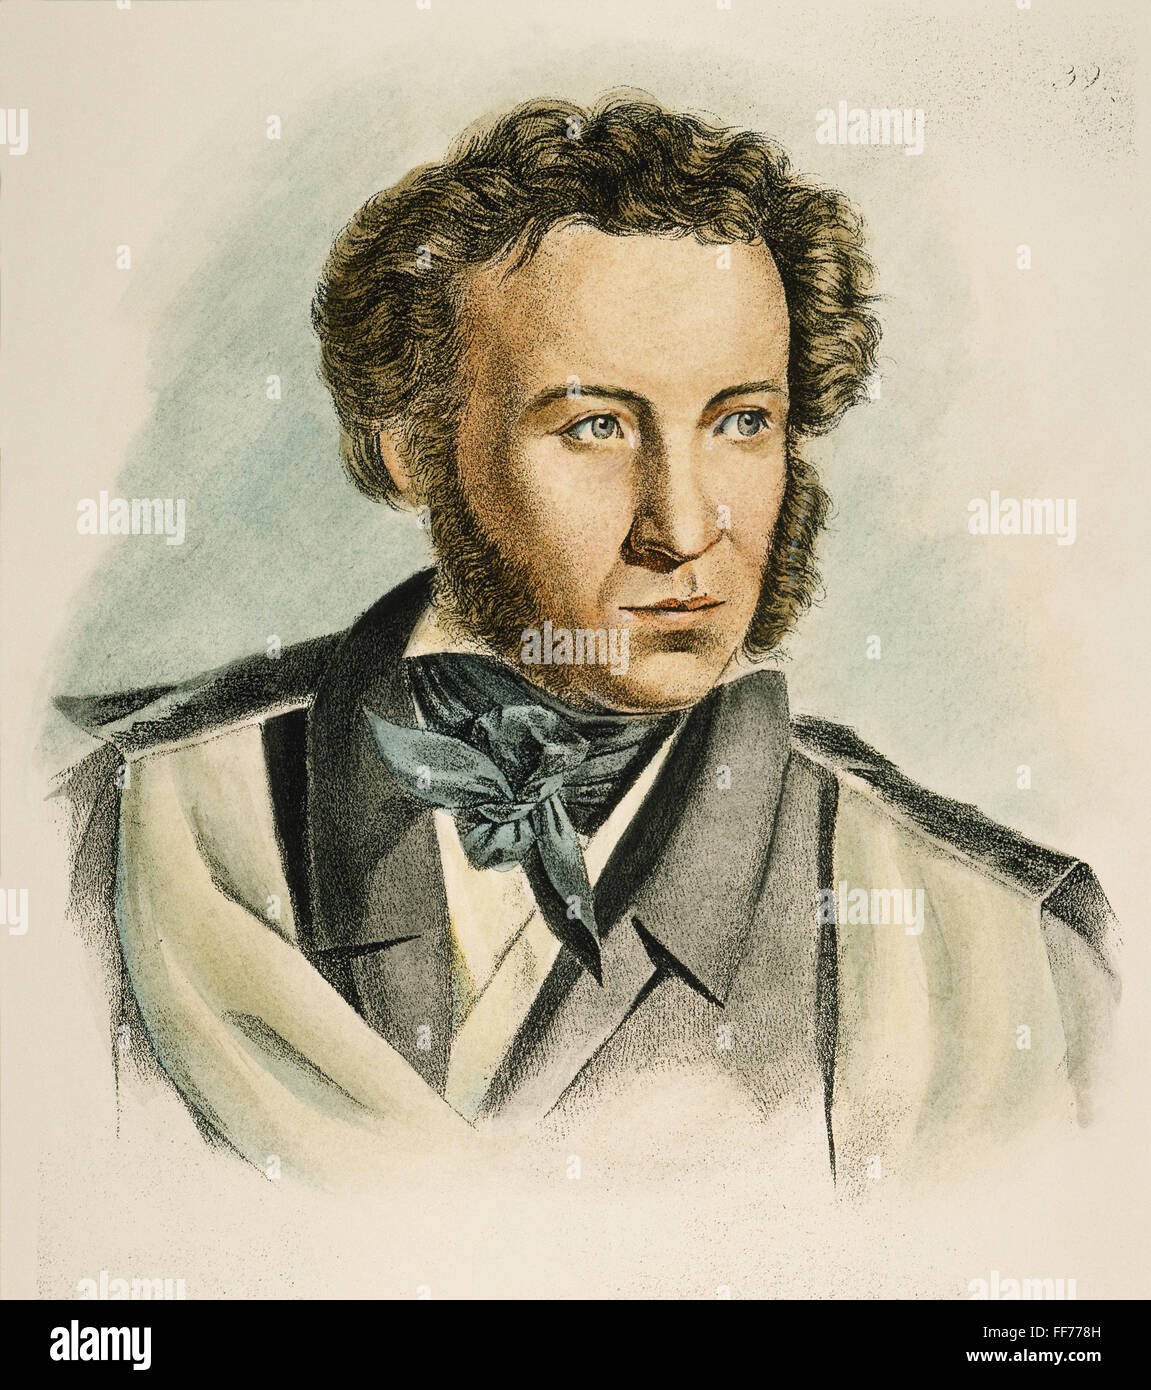 ALEKSANDR PUSHKIN /n(1799-1837). Russischer Dichter. Zeitgenössische Lithographie. Stockfoto